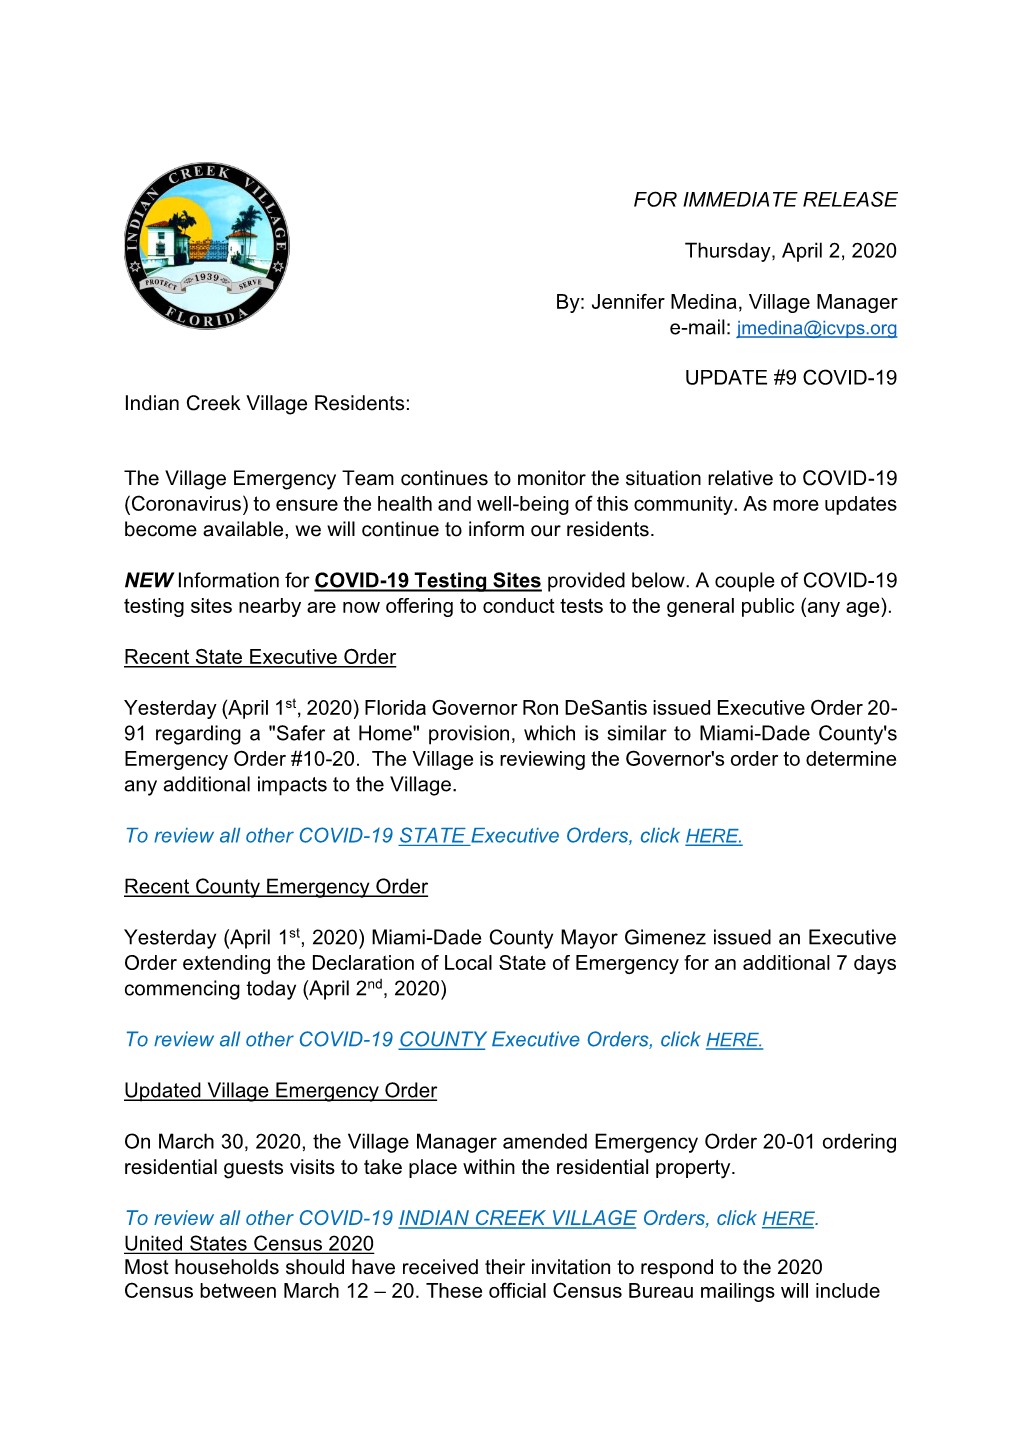 COVID-19 ICV Update #9 April 2 2020